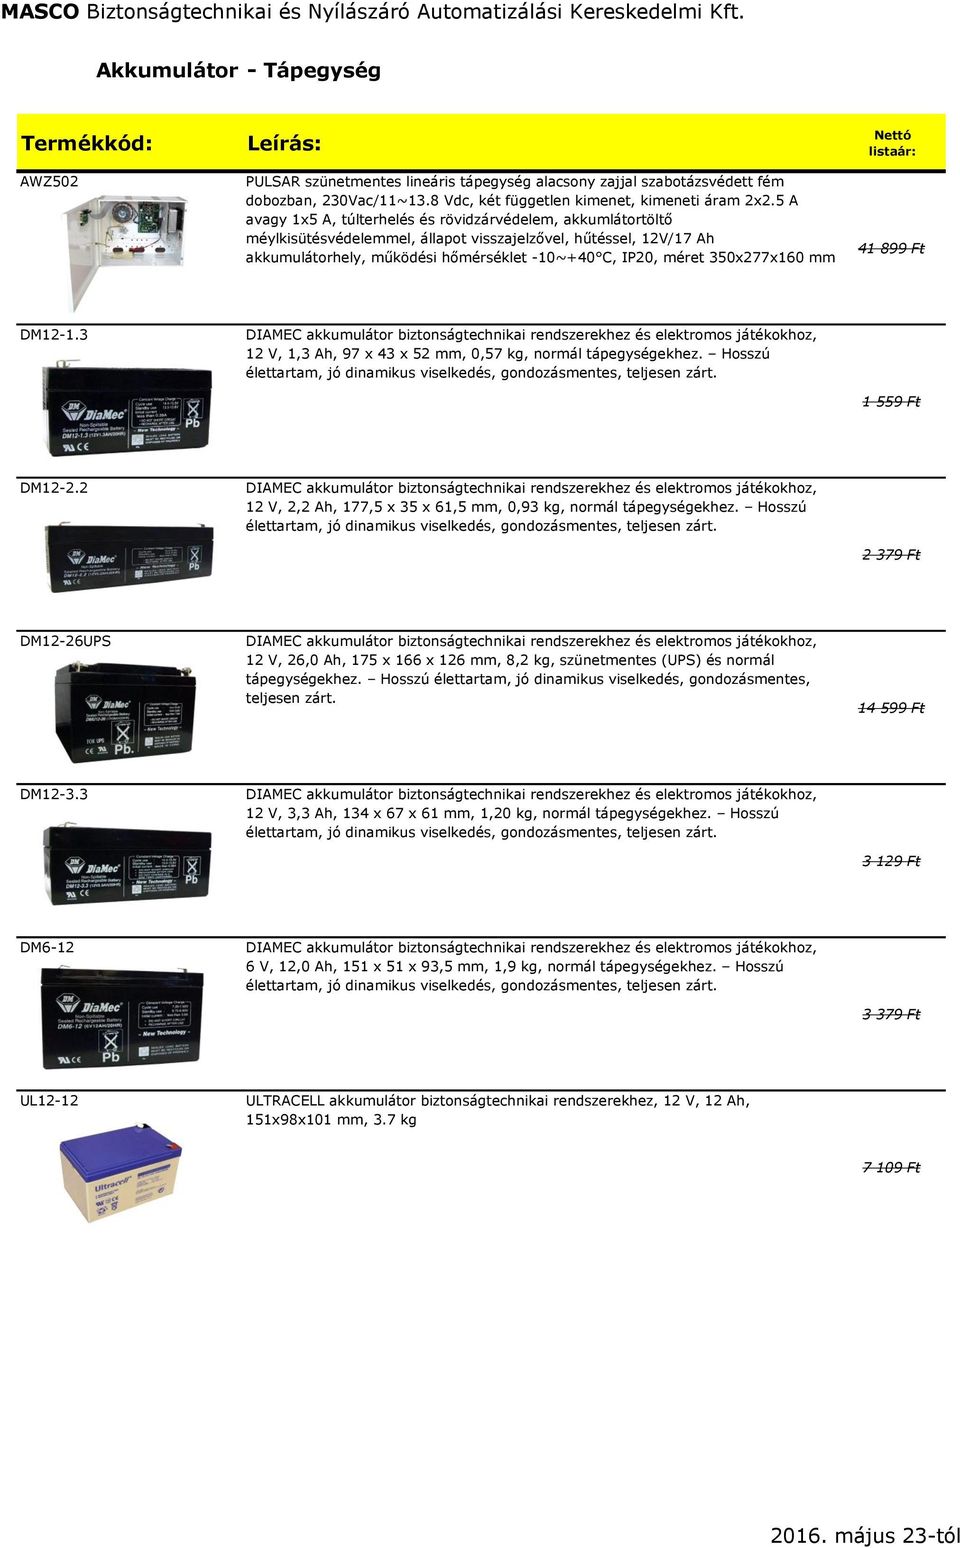 350x277x160 mm Nettó listaár: 41 899 Ft DM12-1.3 DIAMEC akkumulátor biztonságtechnikai rendszerekhez és elektromos játékokhoz, 12 V, 1,3 Ah, 97 x 43 x 52 mm, 0,57 kg, normál tápegységekhez.